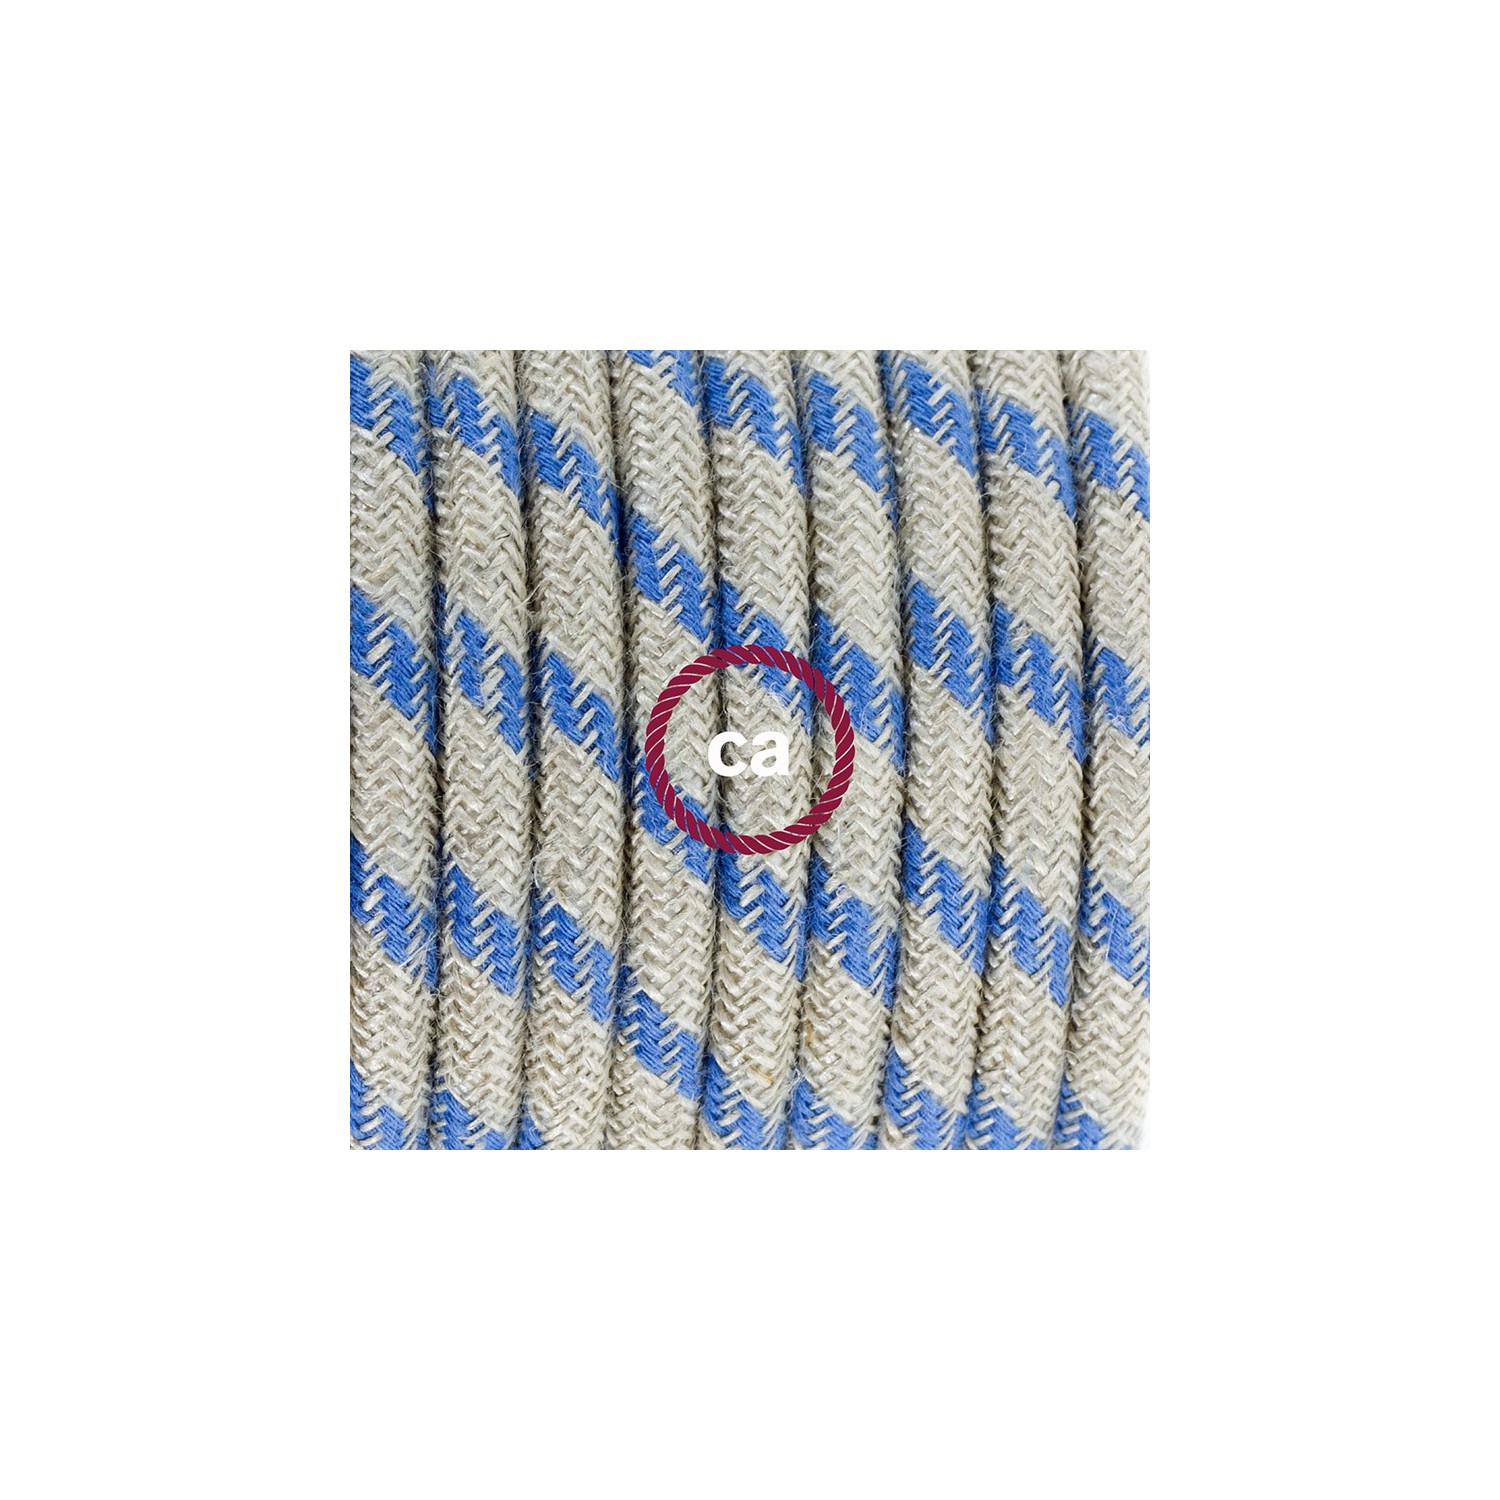 Ronde flexibele textielkabel van katoen met schakelaar en stekker. RD55 - Steward blauwe strepen en linnen 1,80 m.